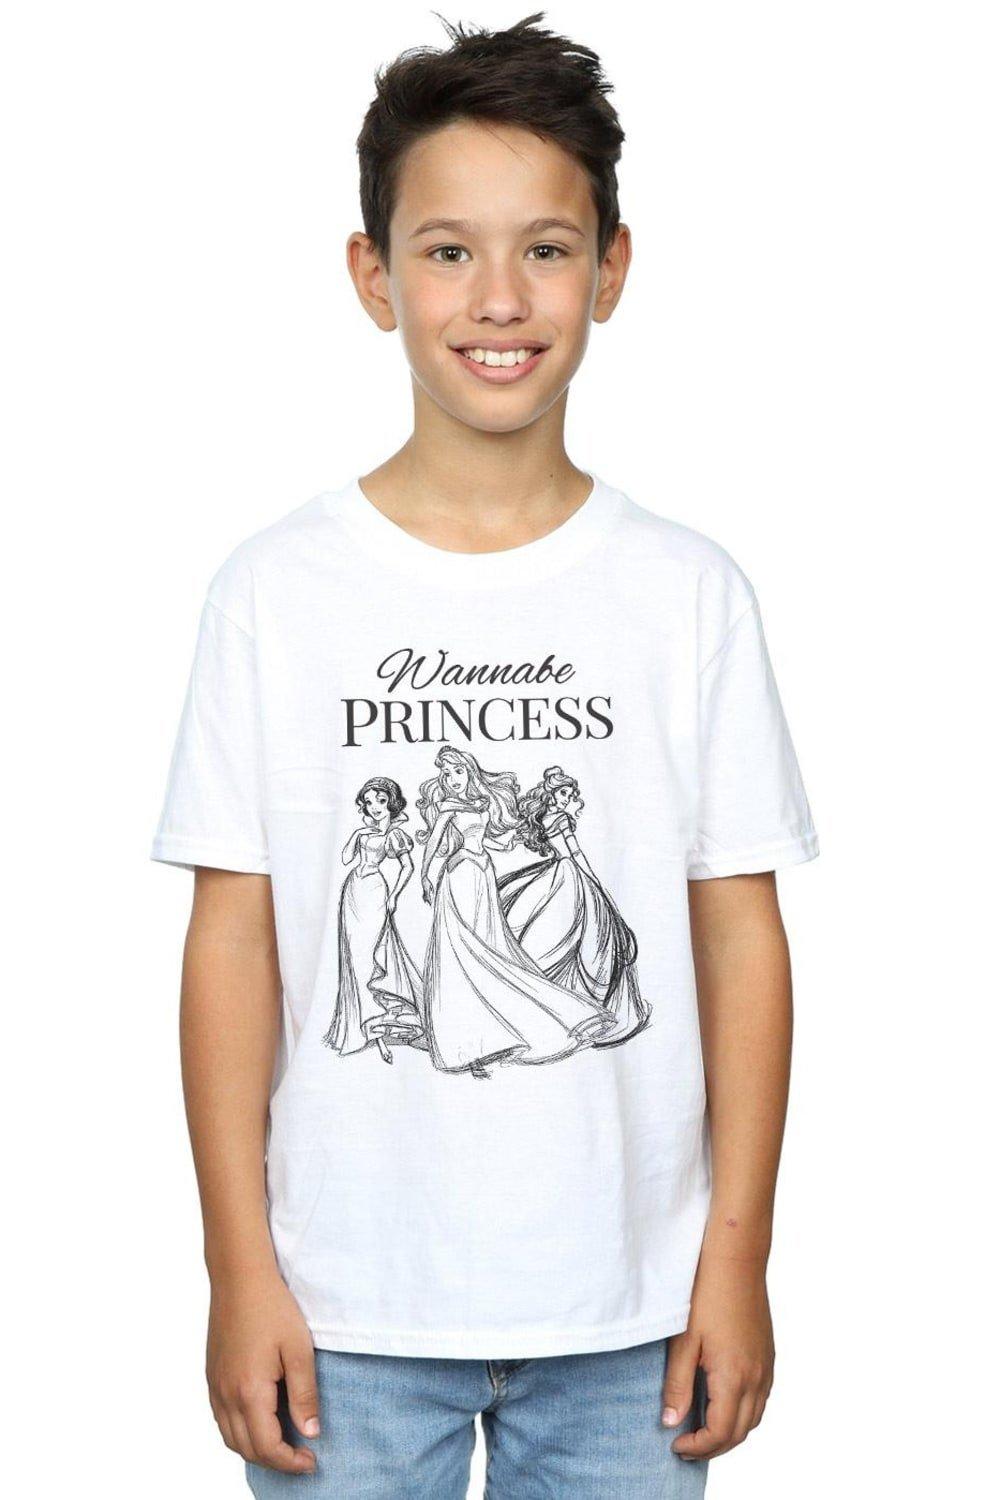 Wannabe Princess T-Shirt